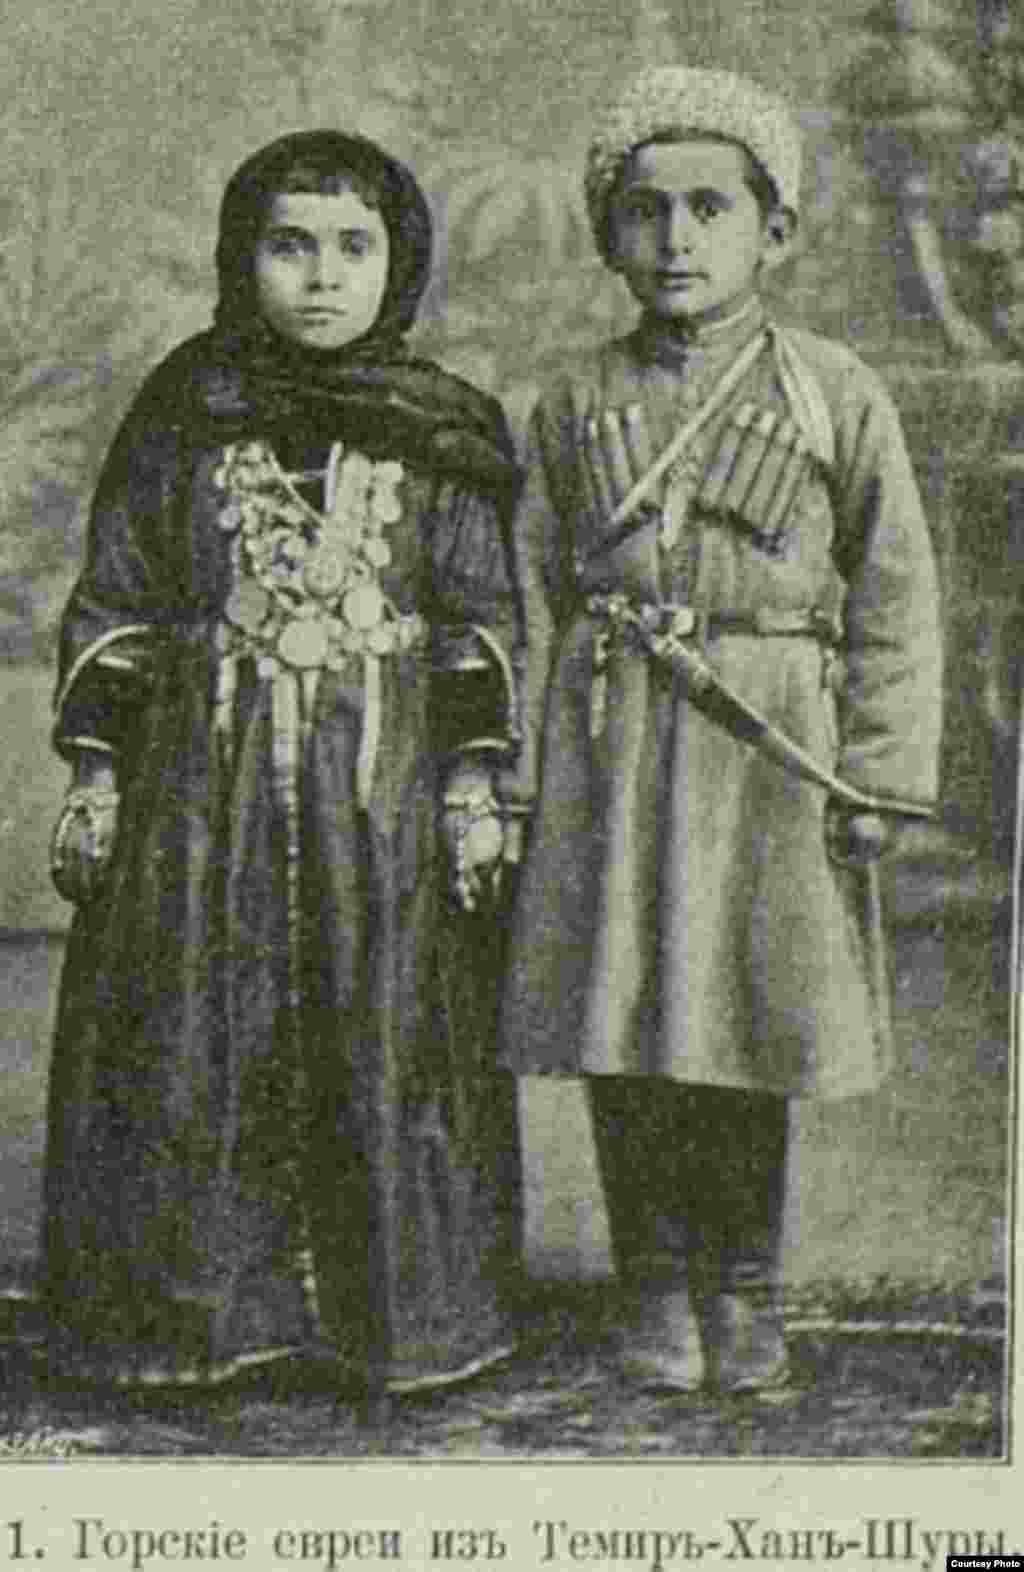 Горские евреи в быту и одежде были схожи с горцами Северного Кавказа